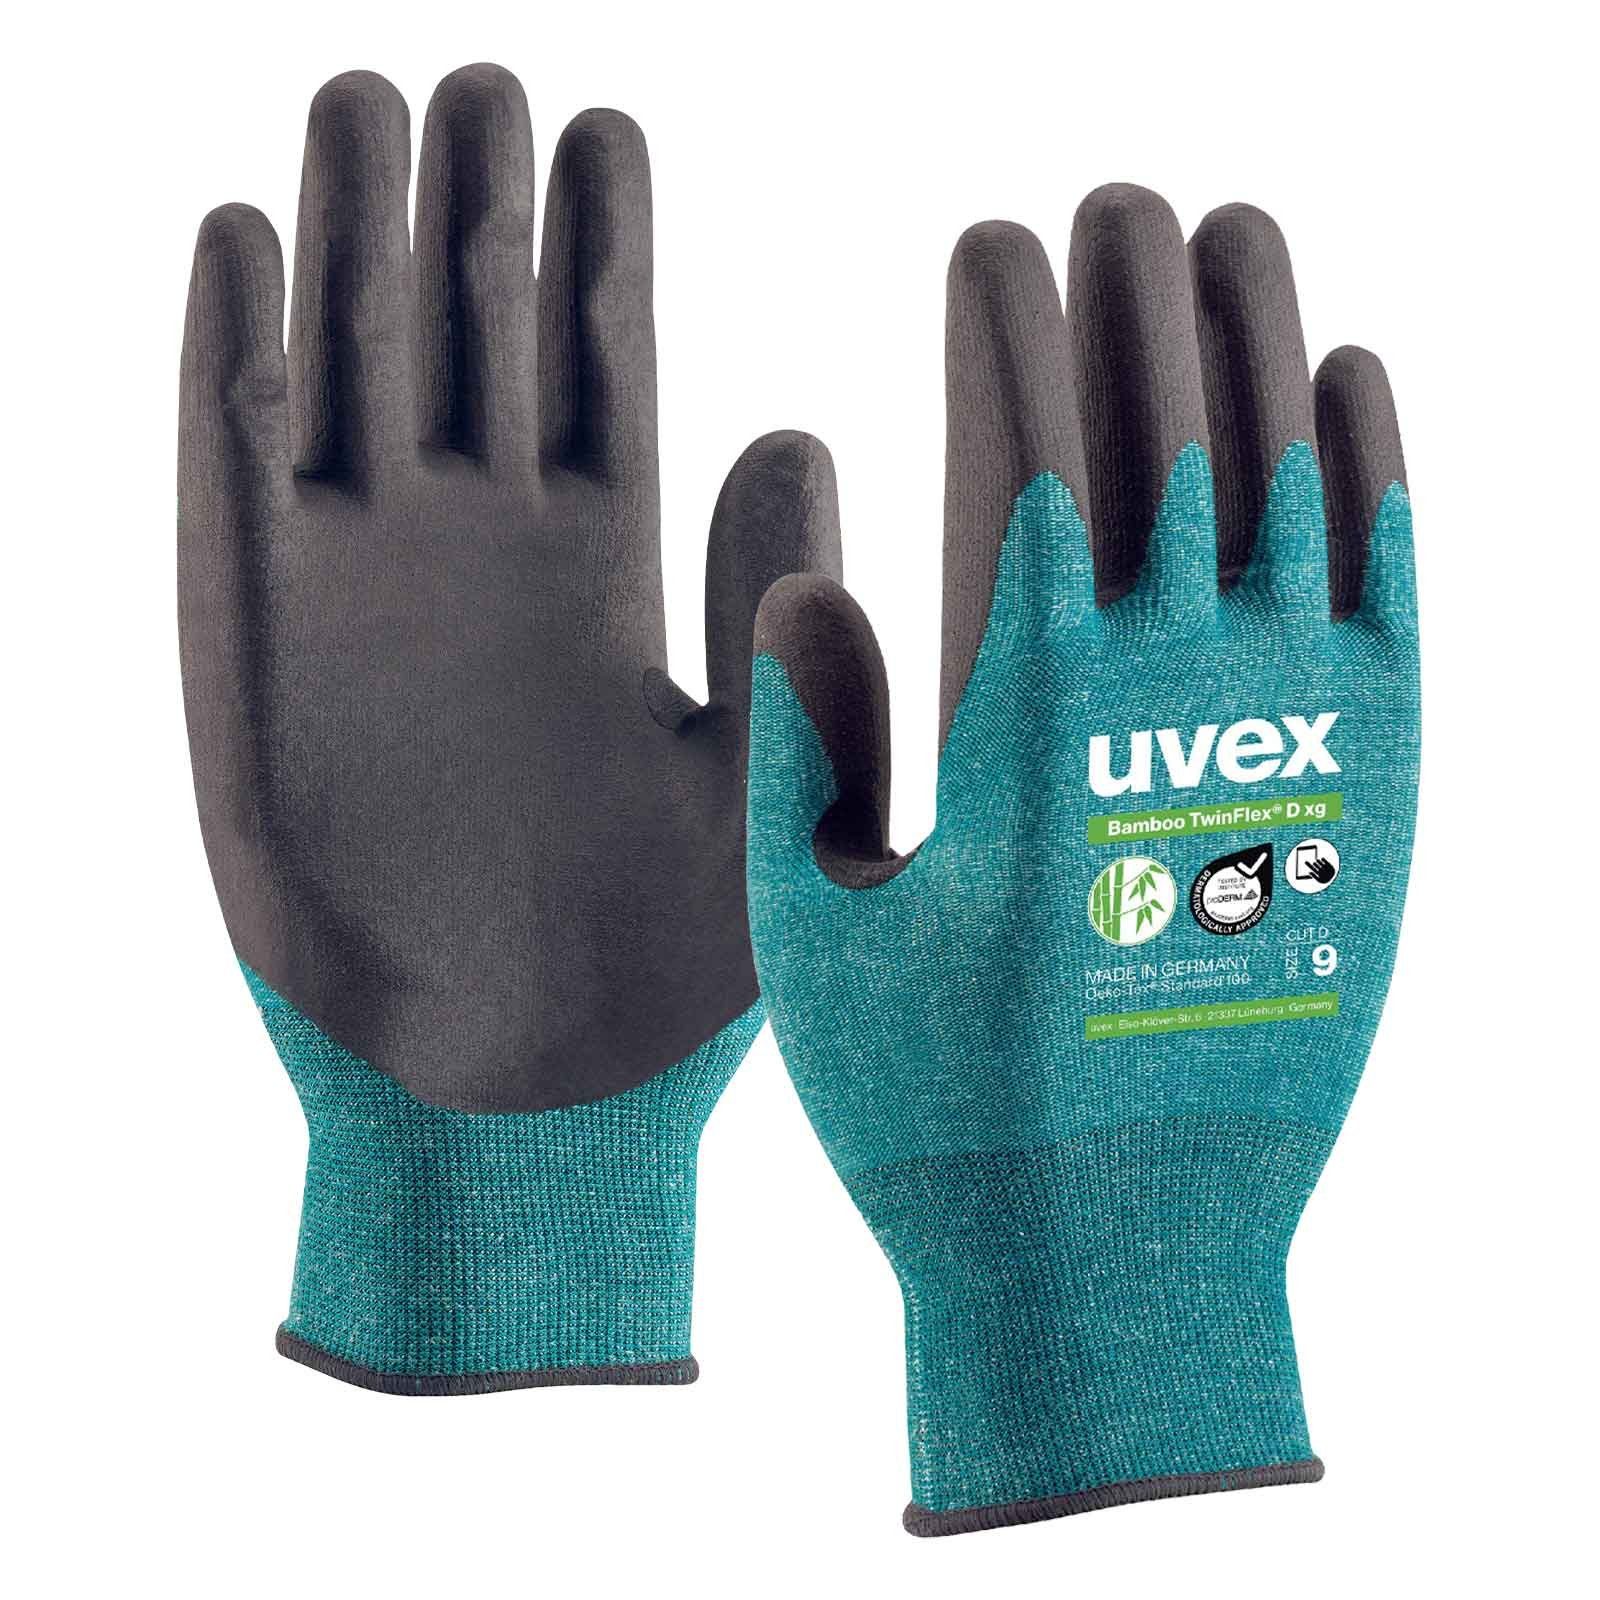 D Paar 60090 Mechaniker-Handschuhe (Spar-Set) Bamboo xg D TwinFlex Uvex Schnittschutzhandschuhe uvex 5 Cut